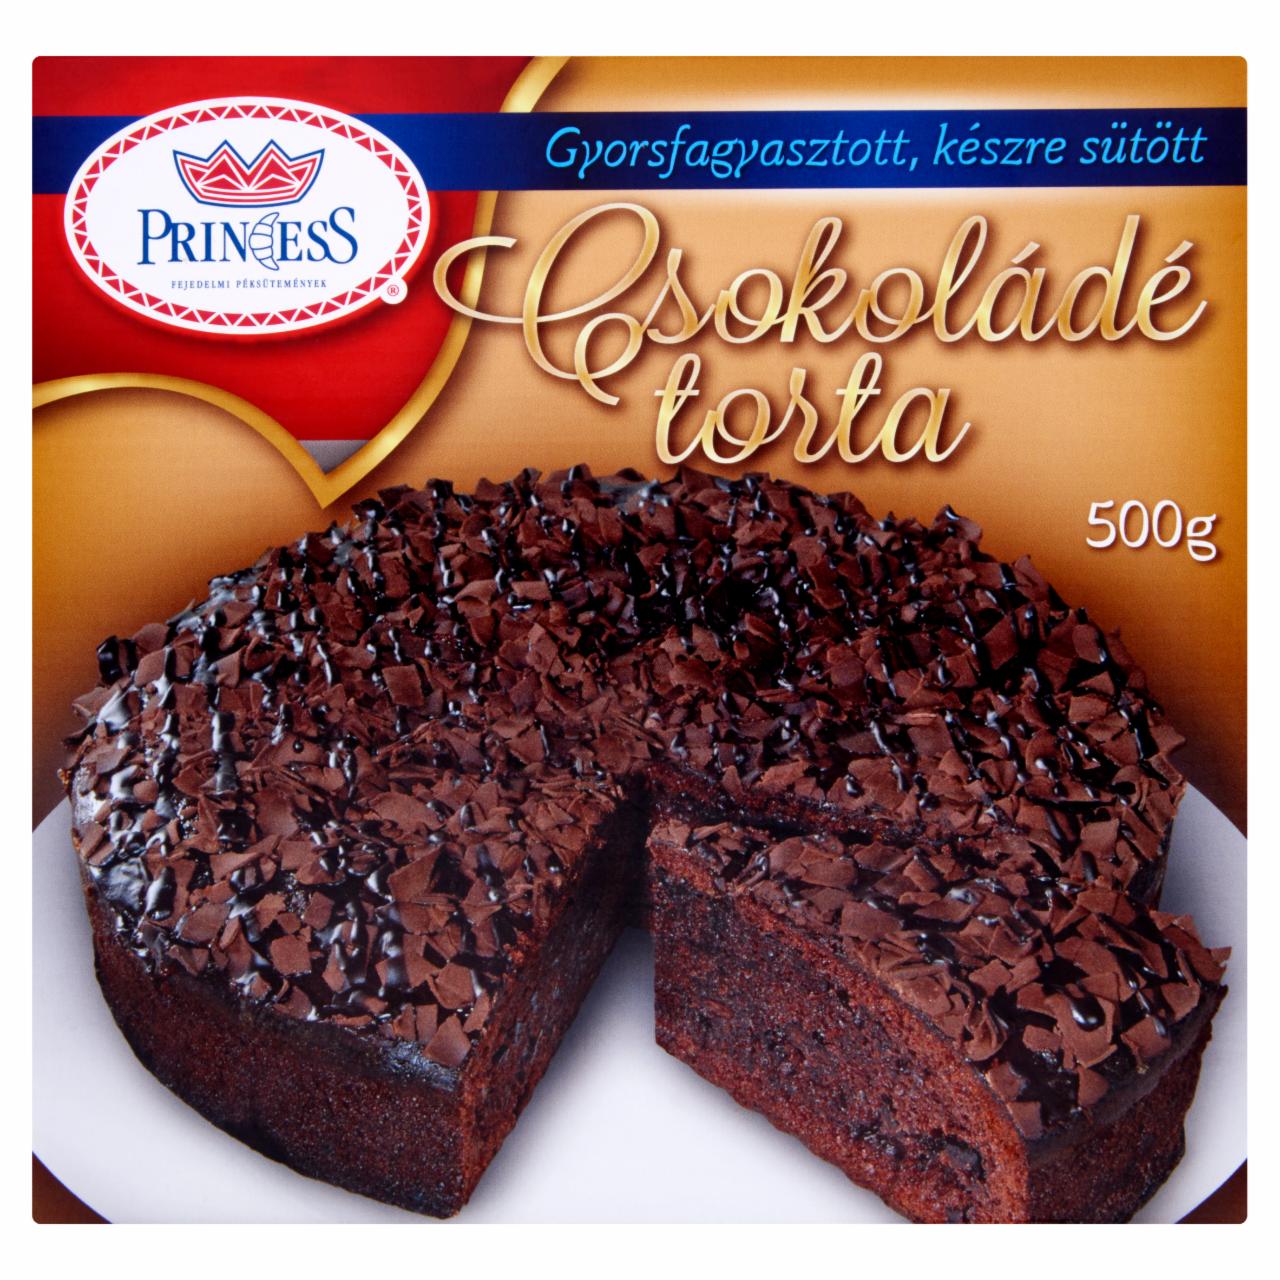 Képek - Princess gyorsfagyasztott, készre sütött csokoládé torta 500 g